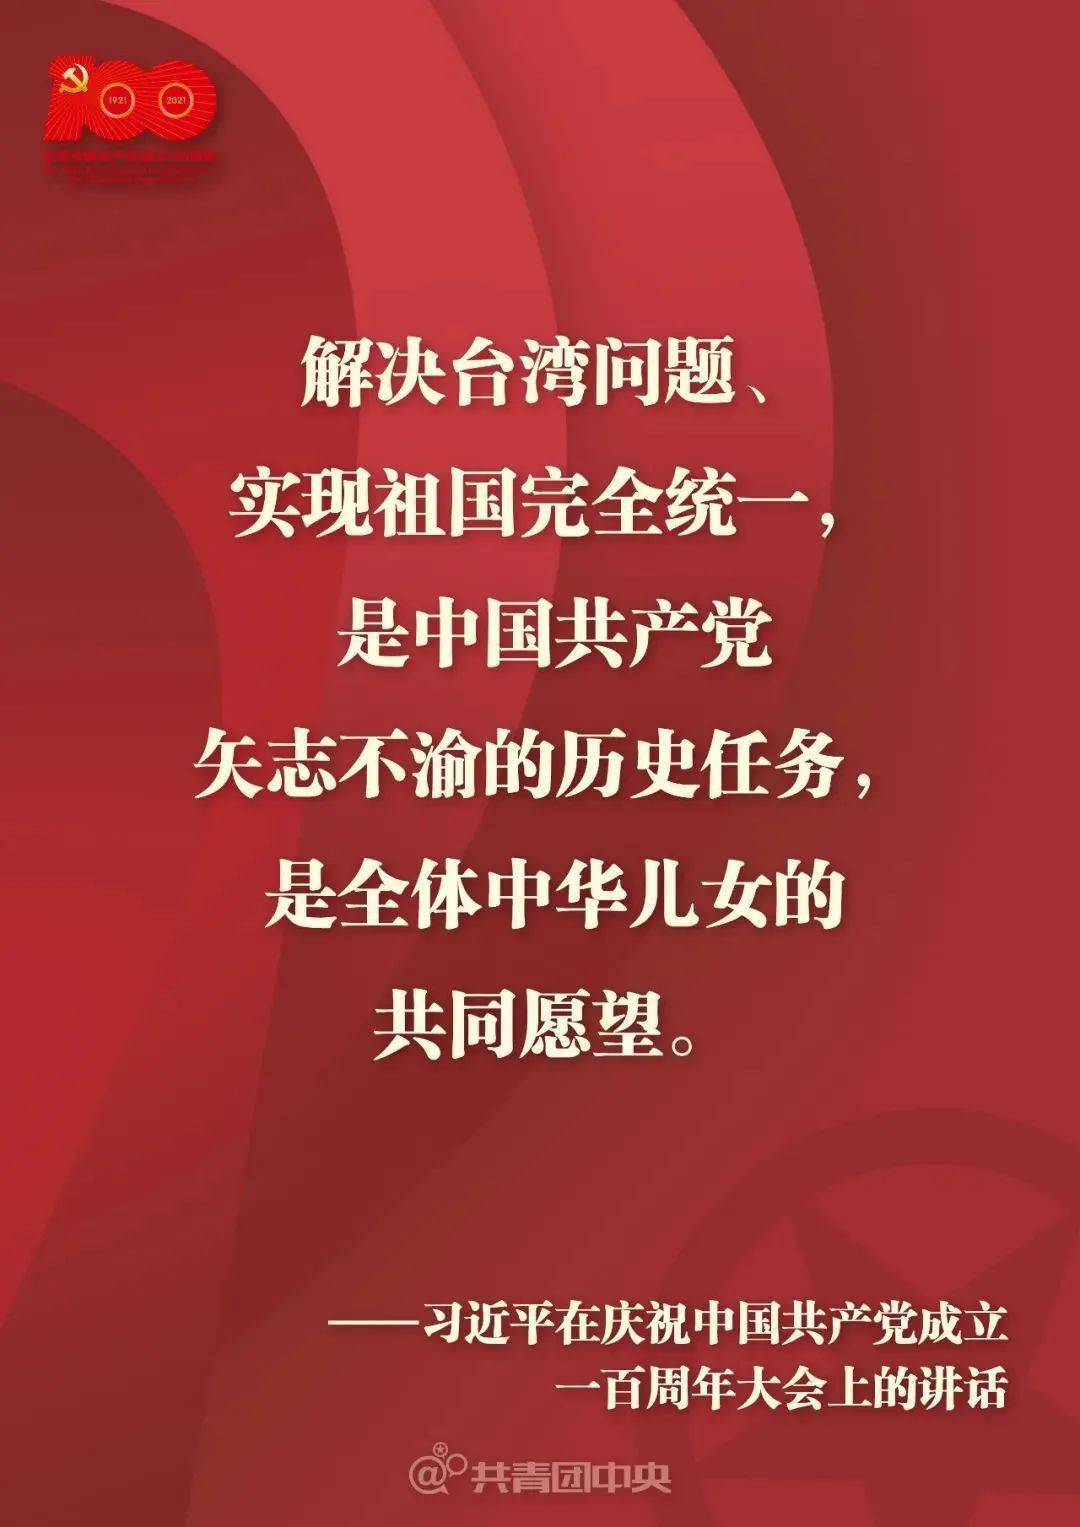 解决台湾问题,实现祖国完全统一,是中国共产党矢志不渝的历史任务,是